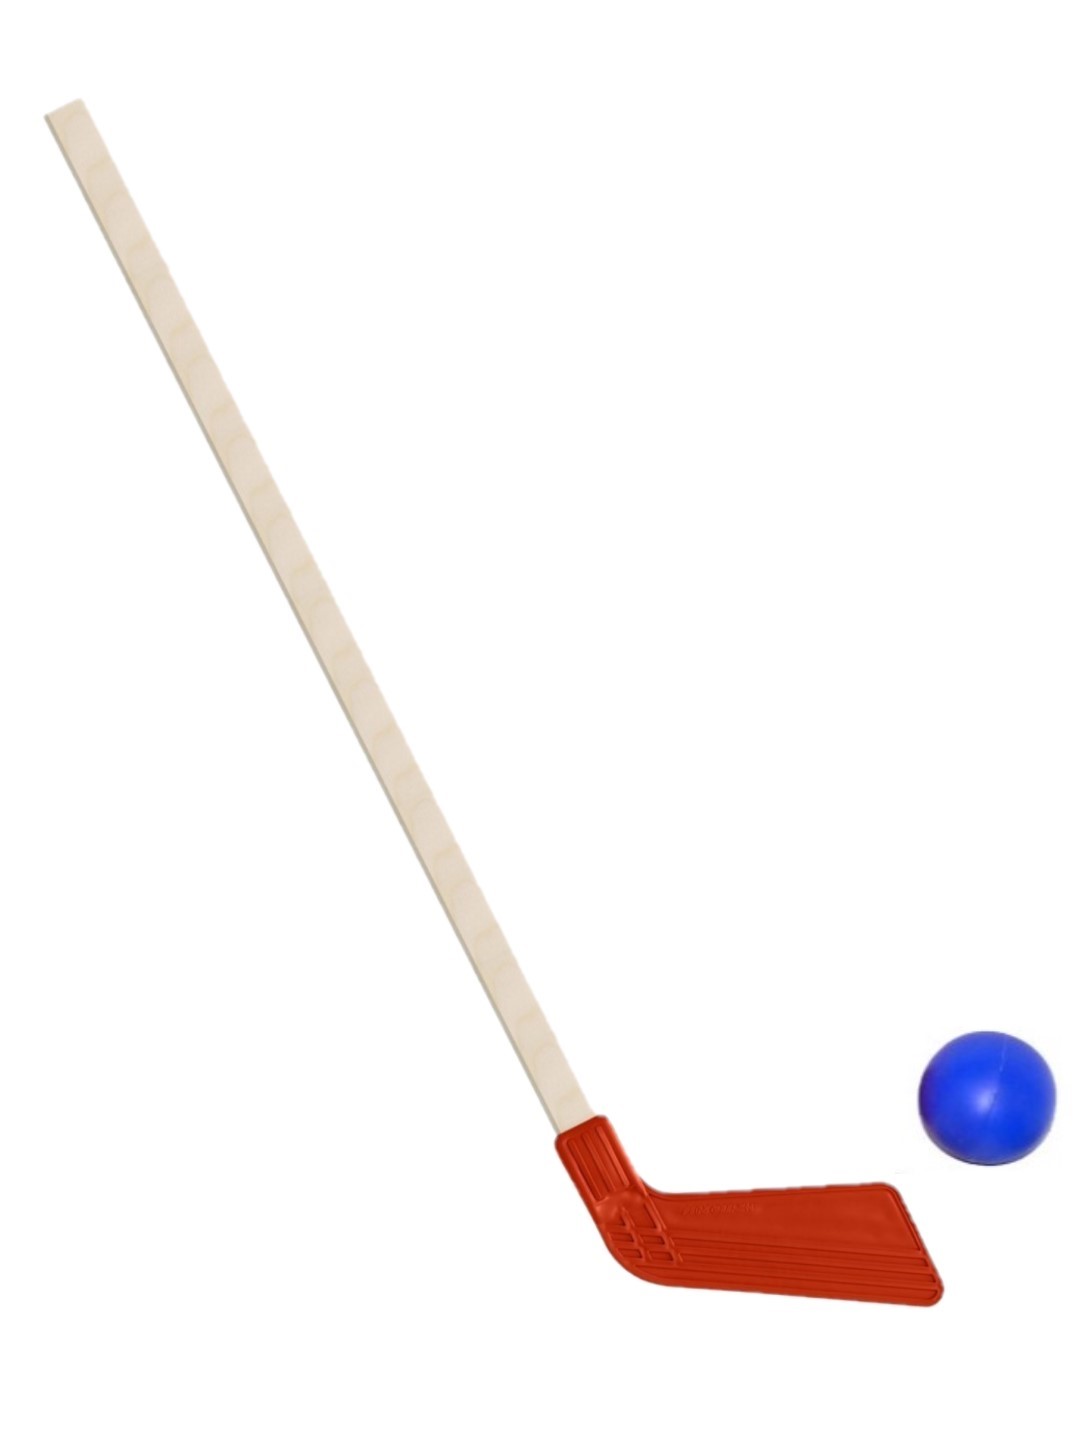 Детский хоккейный набор Задира-плюс Клюшка хоккейная детская красная + мячик